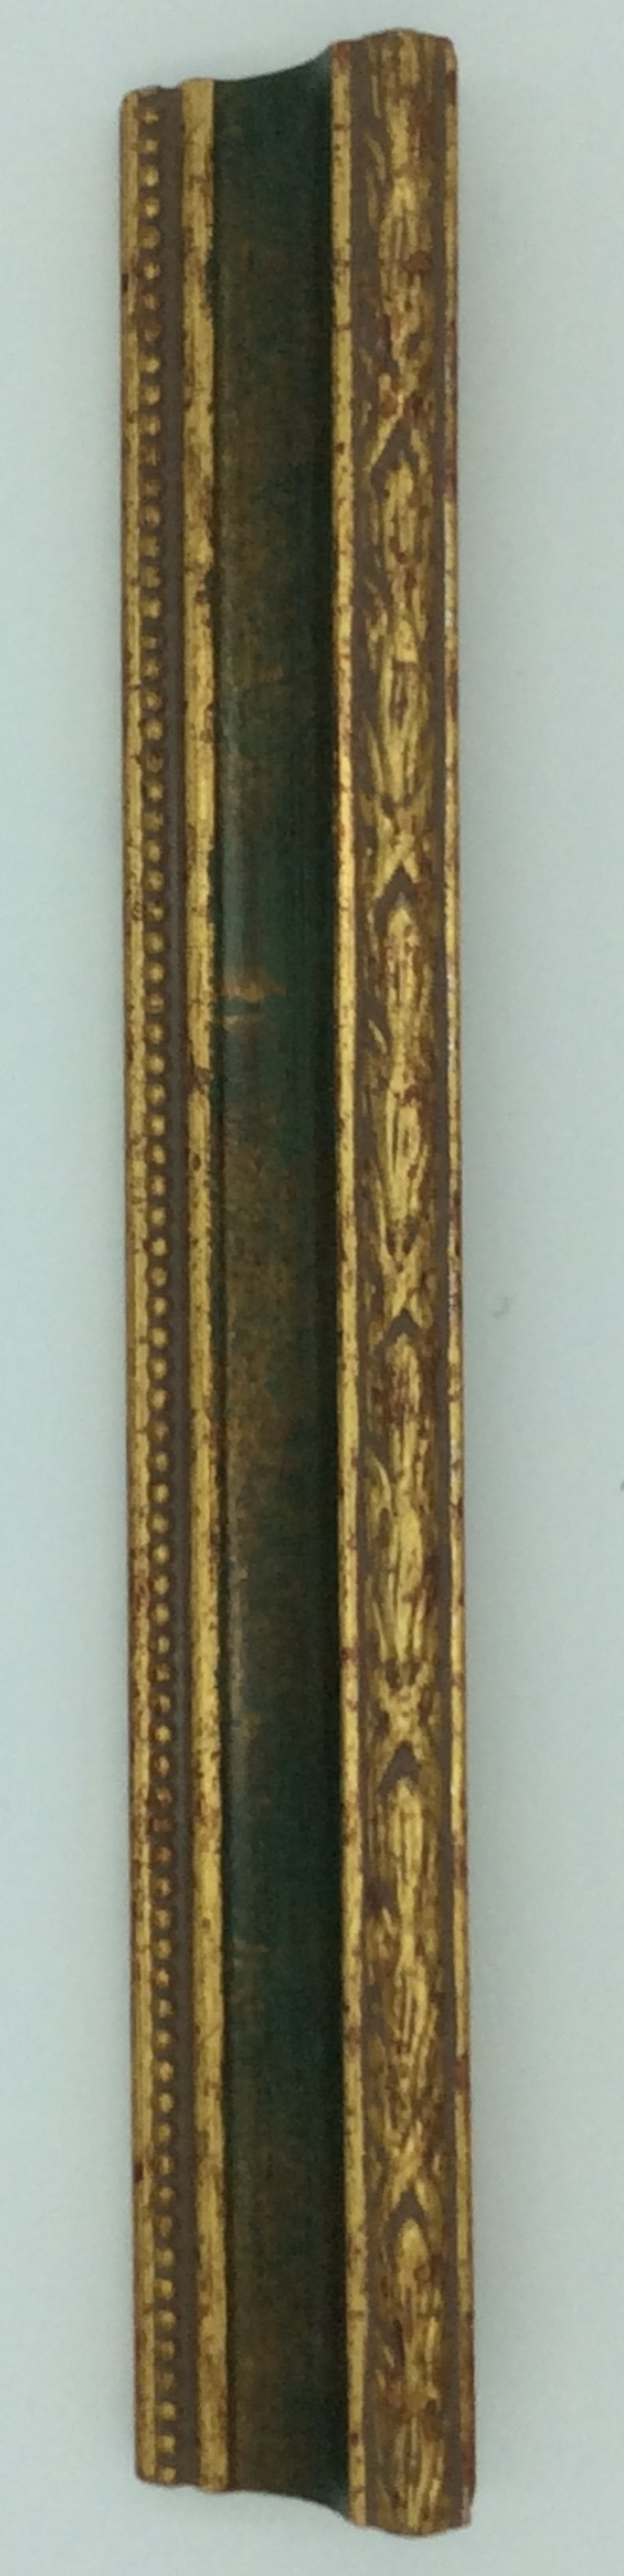 Cornice classica oro e verde 60x90